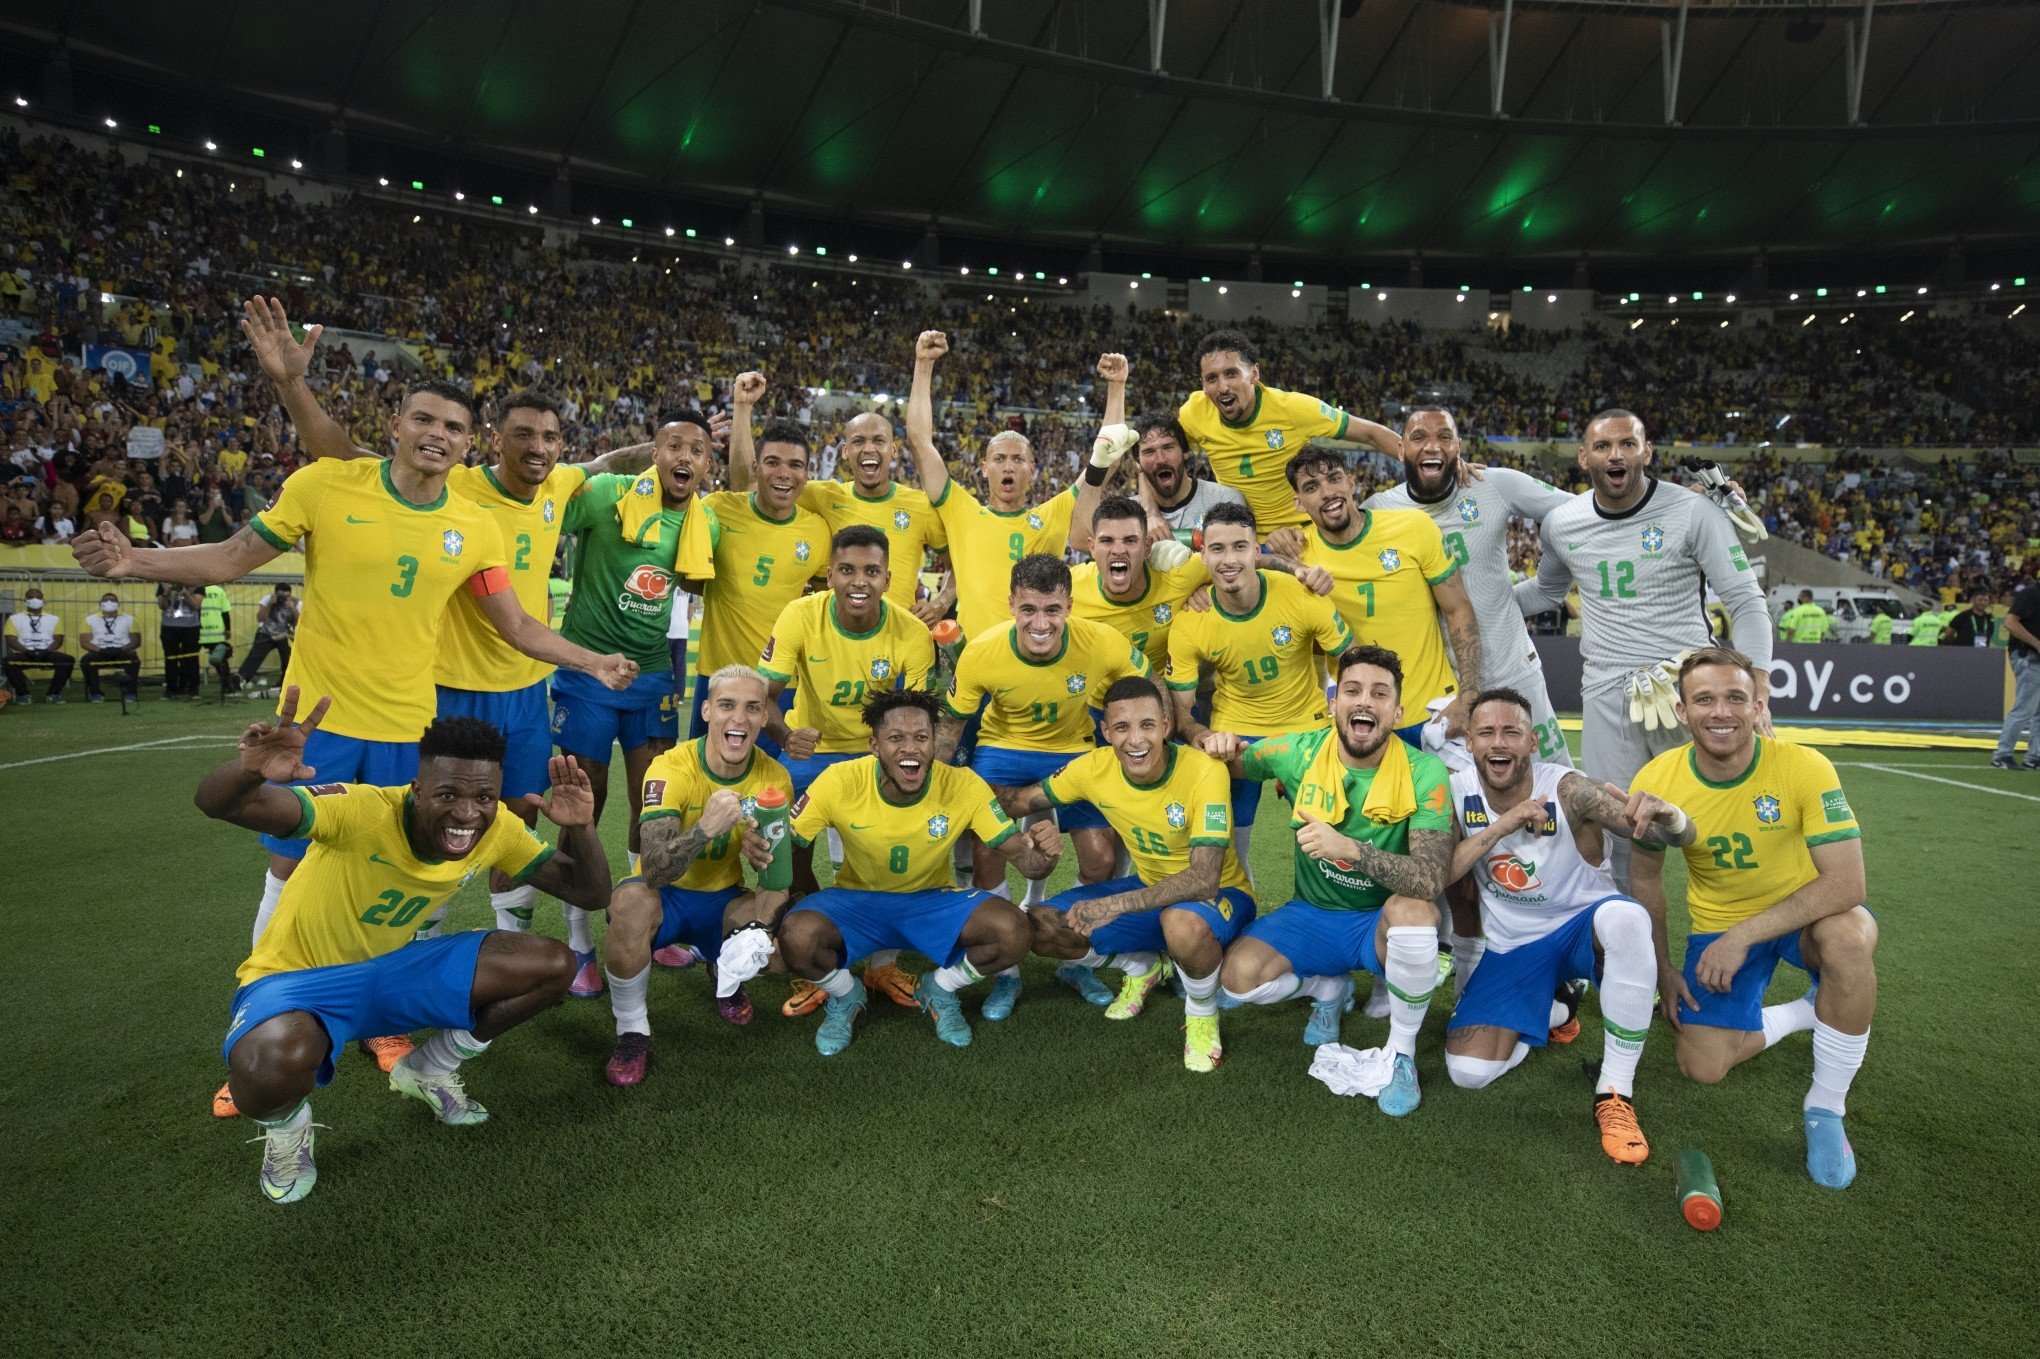 Dias de jogos do Brasil na Copa do Mundo não serão feriado